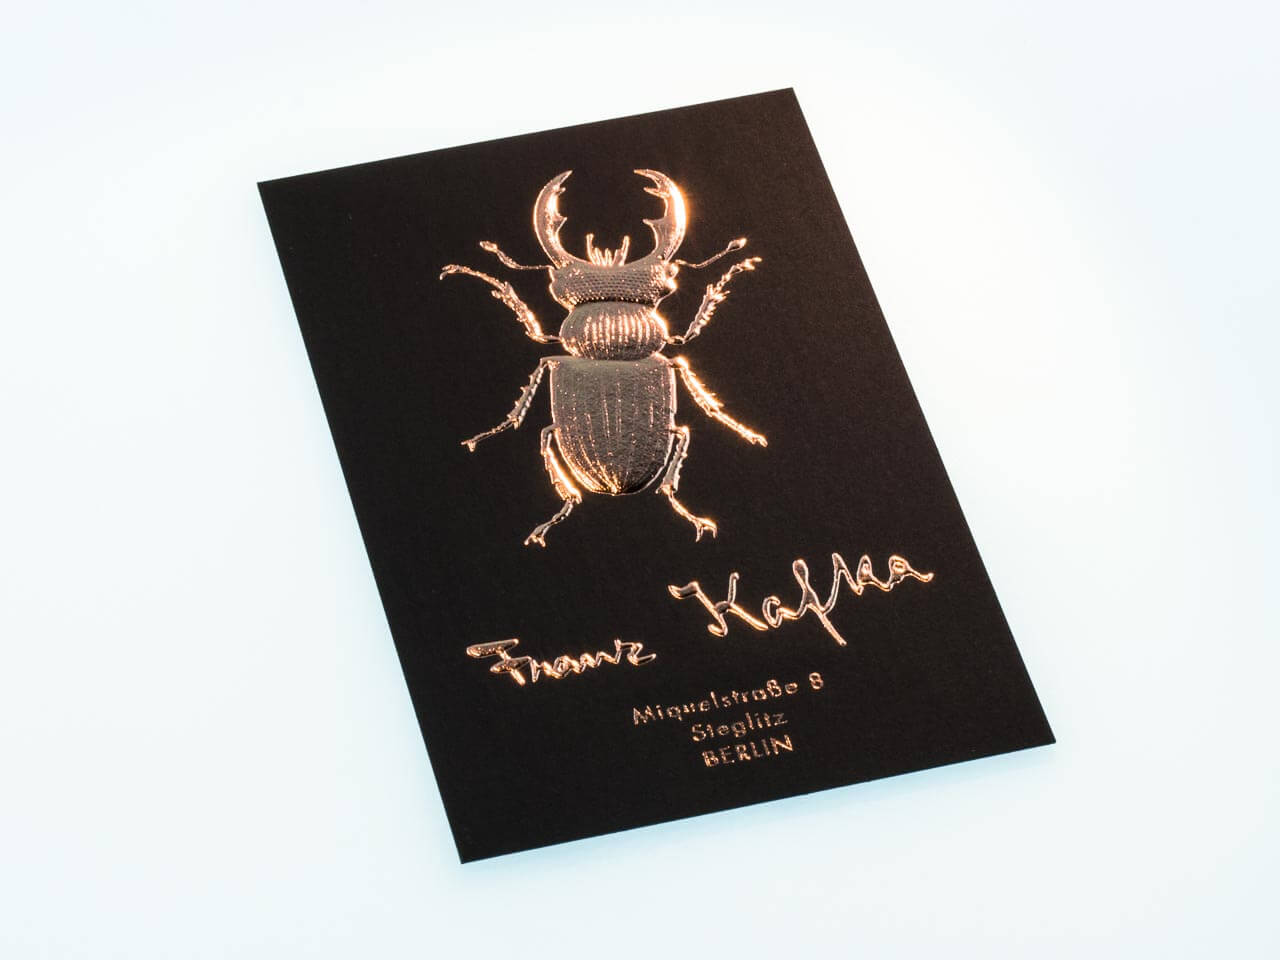 Käfer reliefgeprägt in Kupfer auf schwarzem Karton